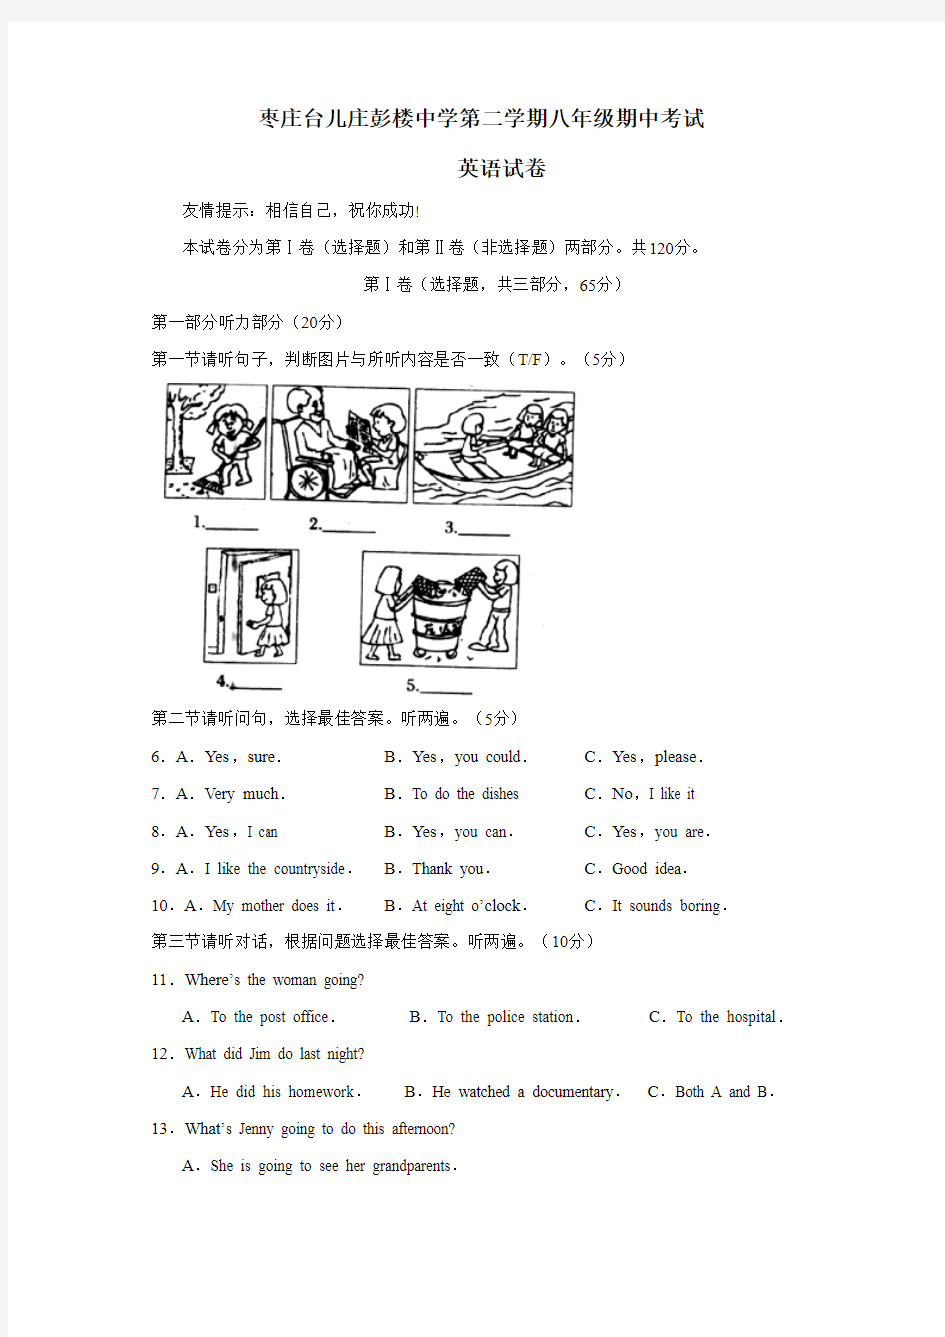 枣庄台儿庄彭楼中学第二学期八年级期中考试英语试卷及答案